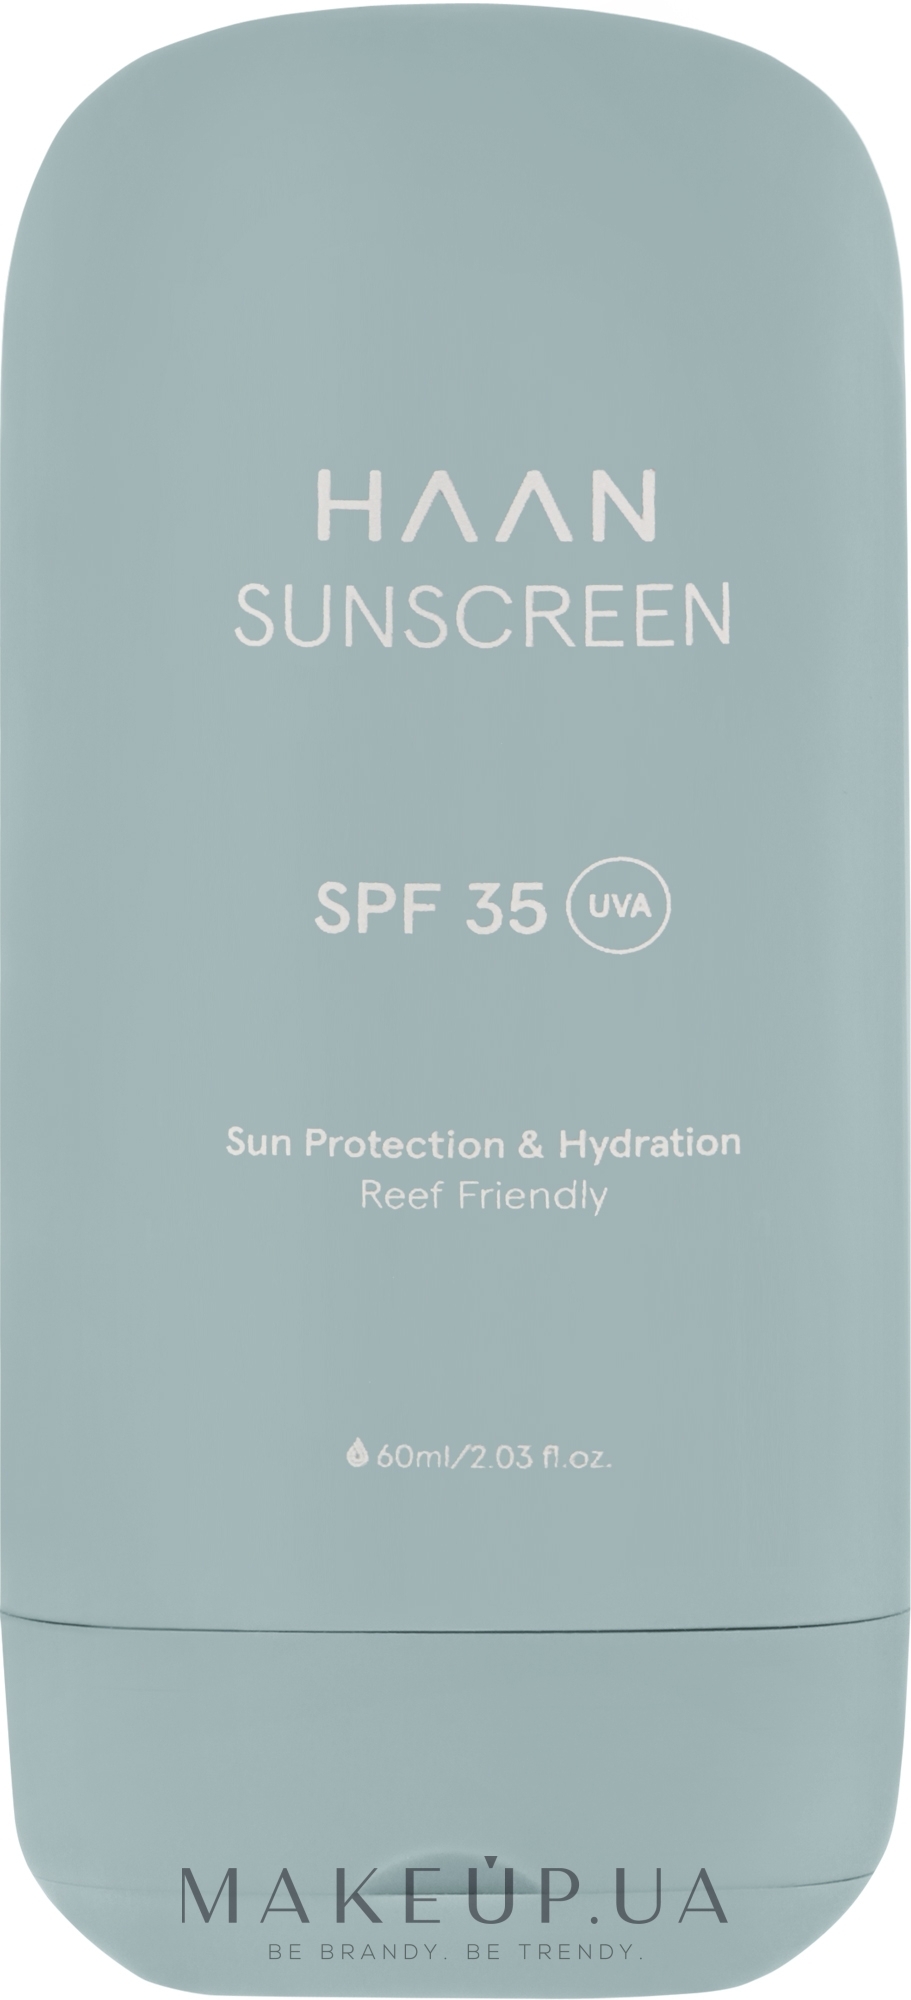 Захисний крем для тіла з SPF 35 - HAAN Sunscreen Body SPF 35 — фото 60ml